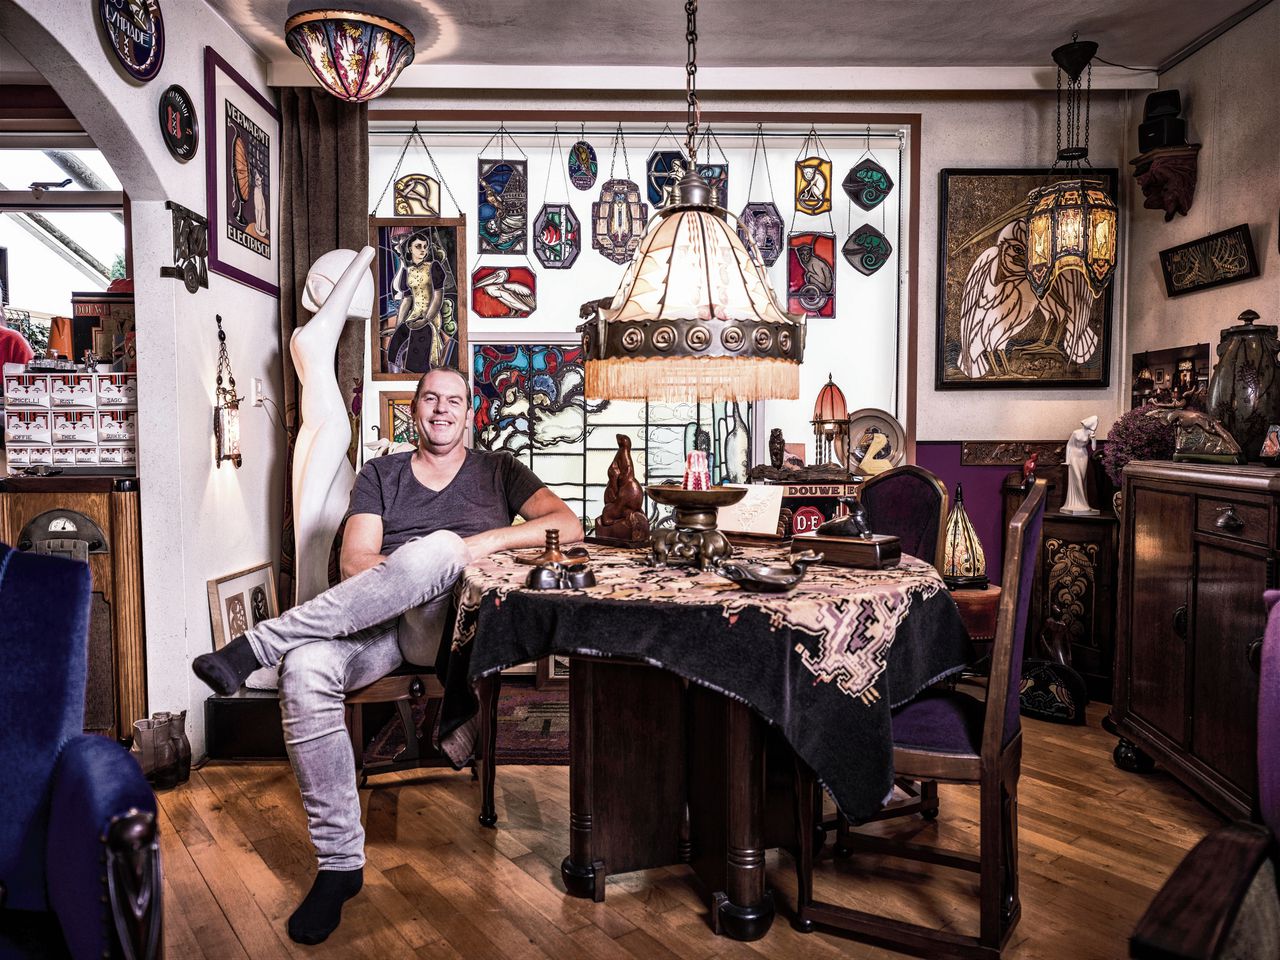 Het huis van Richard Hopman staat vol met voorwerpen gekocht op veilingen en antiekmarkten.